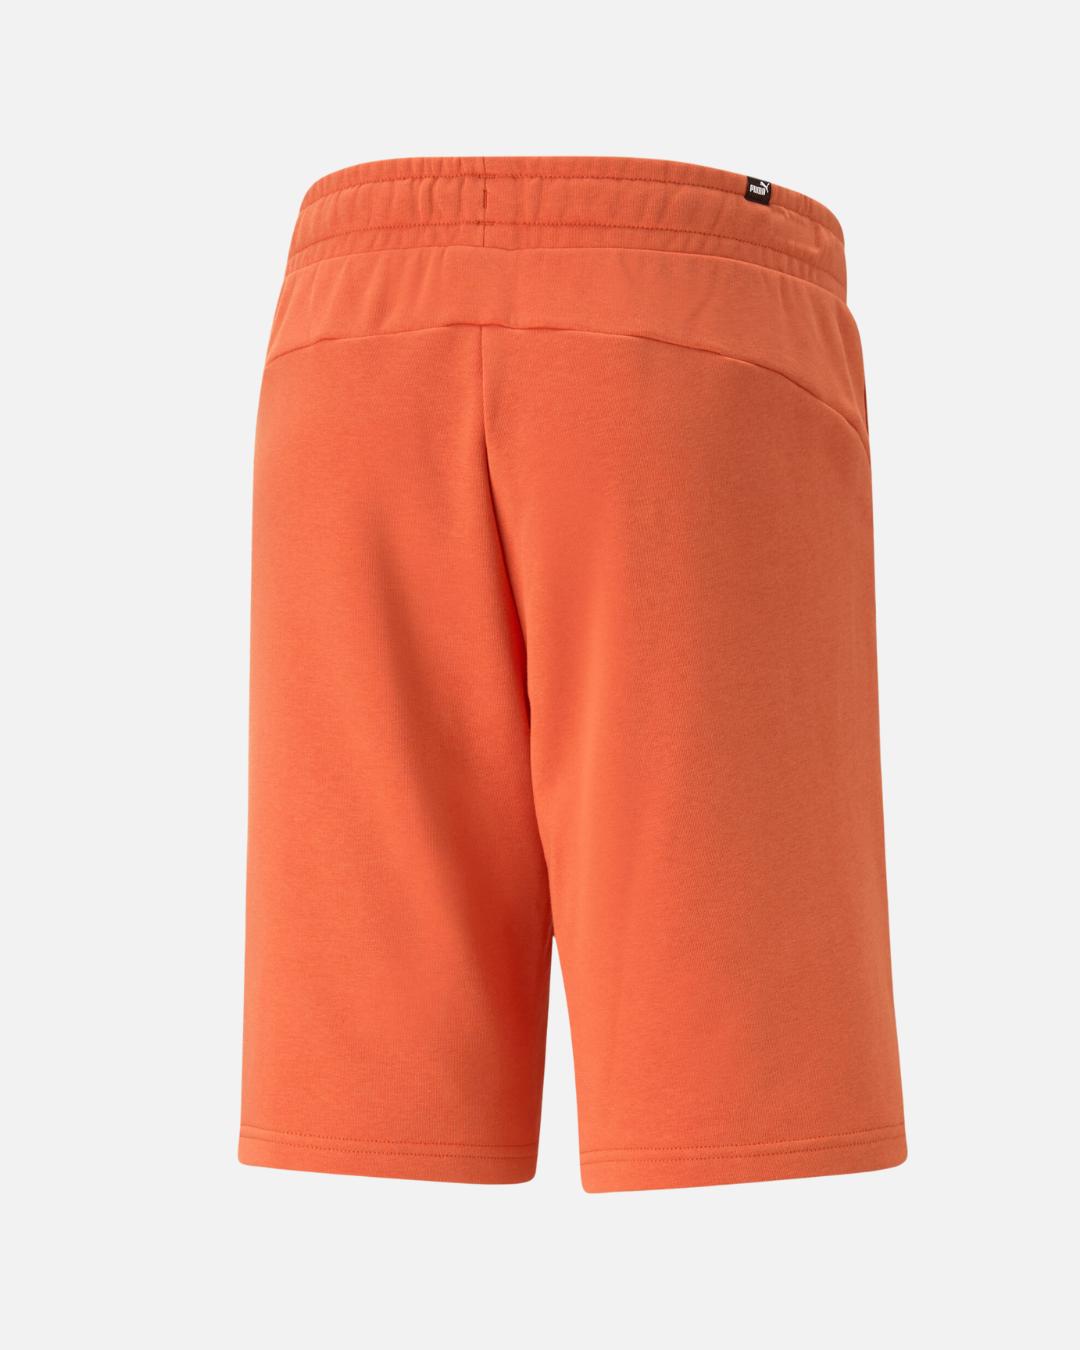 Puma Essentials Shorts - Orange